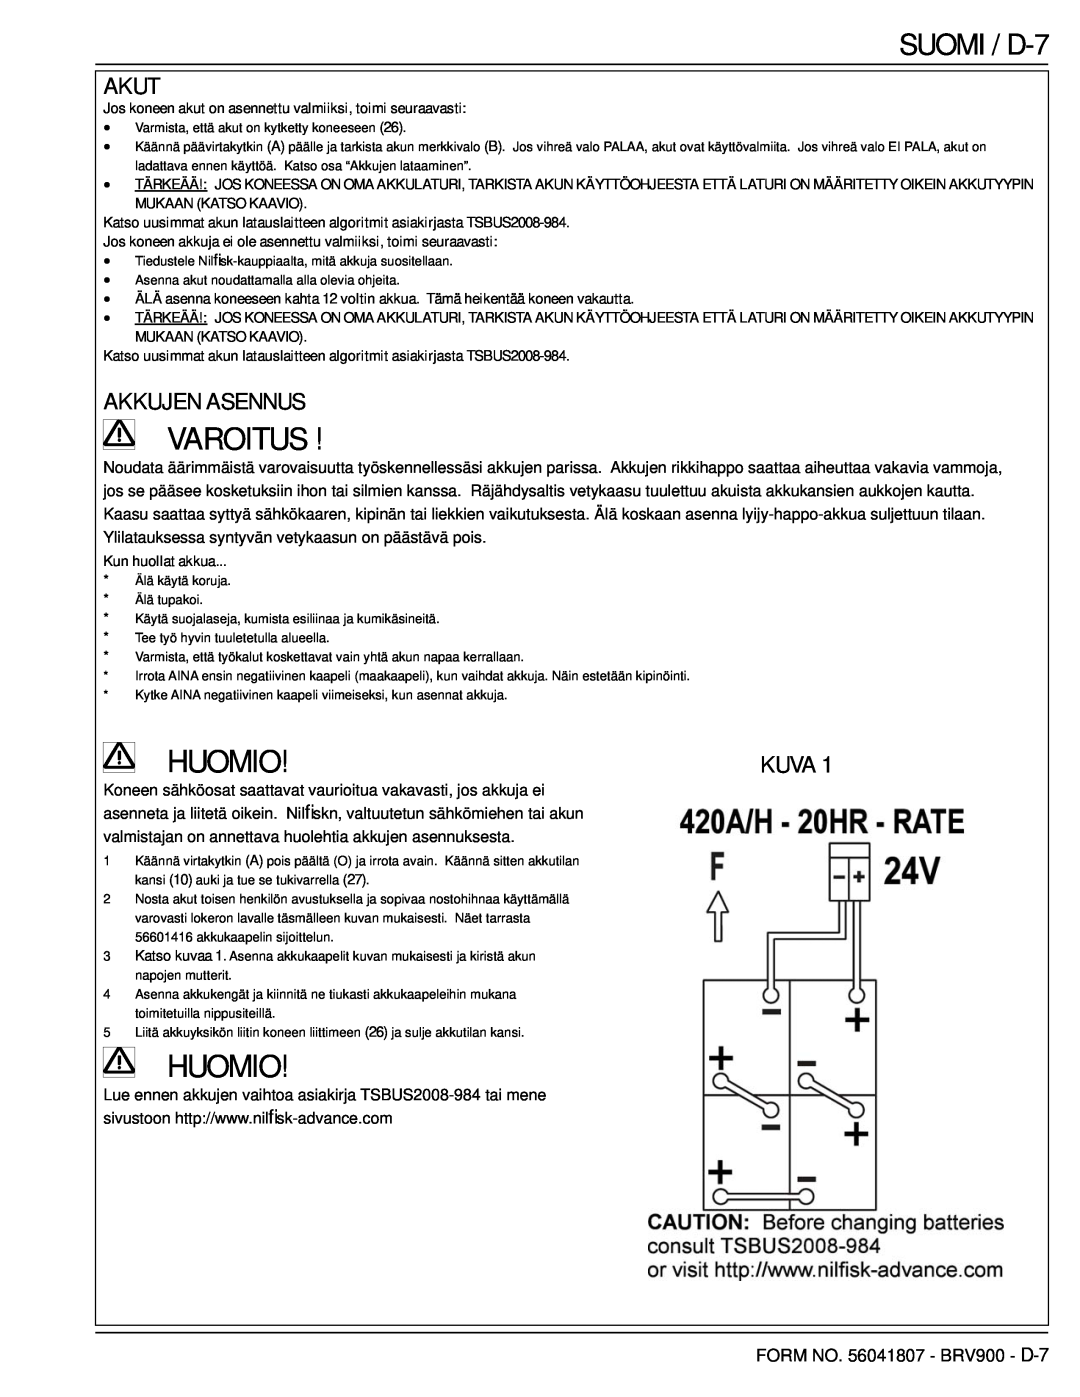 Nilfisk-Advance America 56602002 manual SUOMI / D-7, Akut, Akkujen Asennus, Kuva, Varoitus, Huomio 